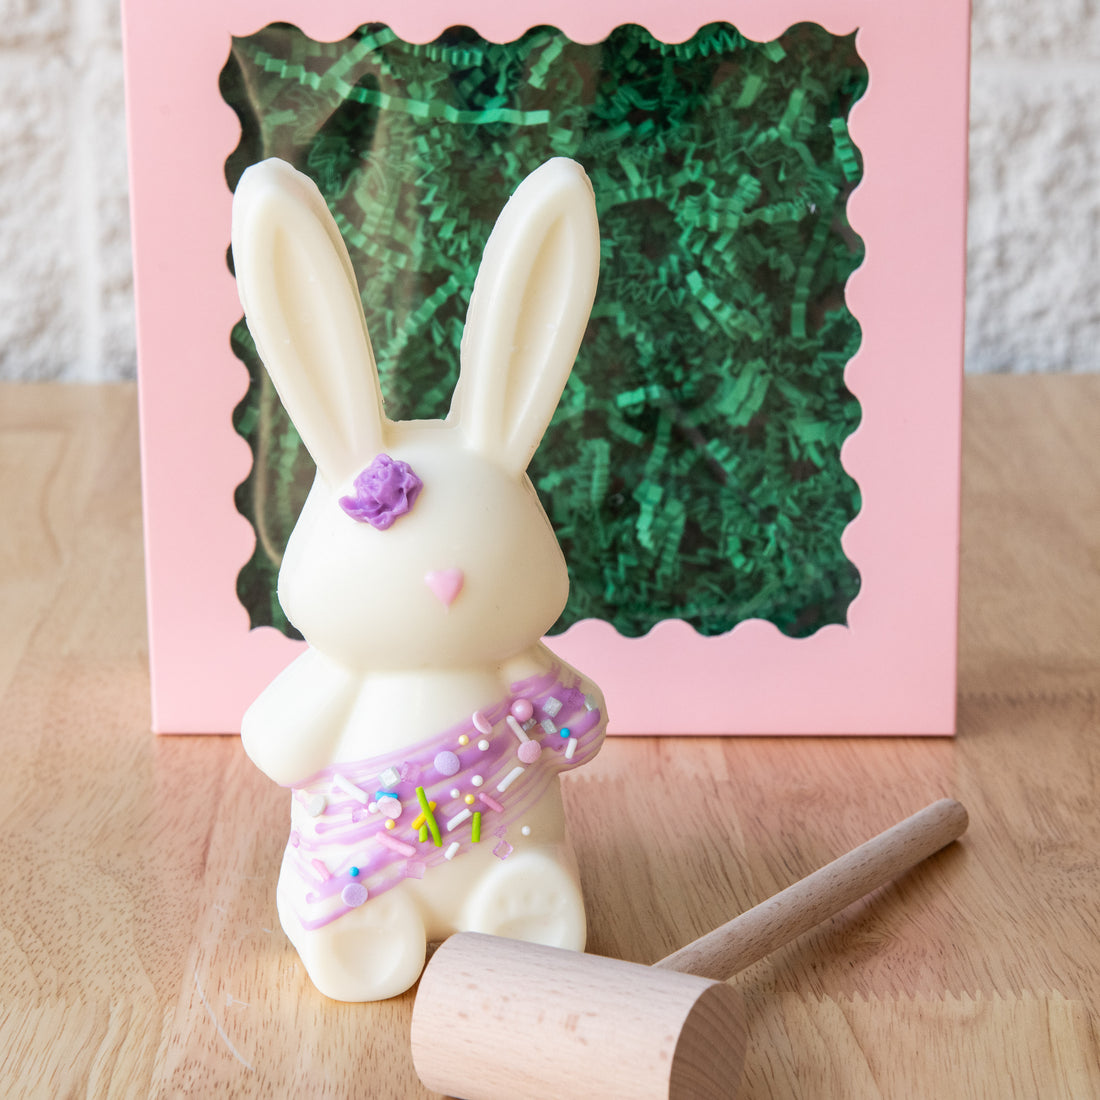 Breakable Chocolate Easter Bunny